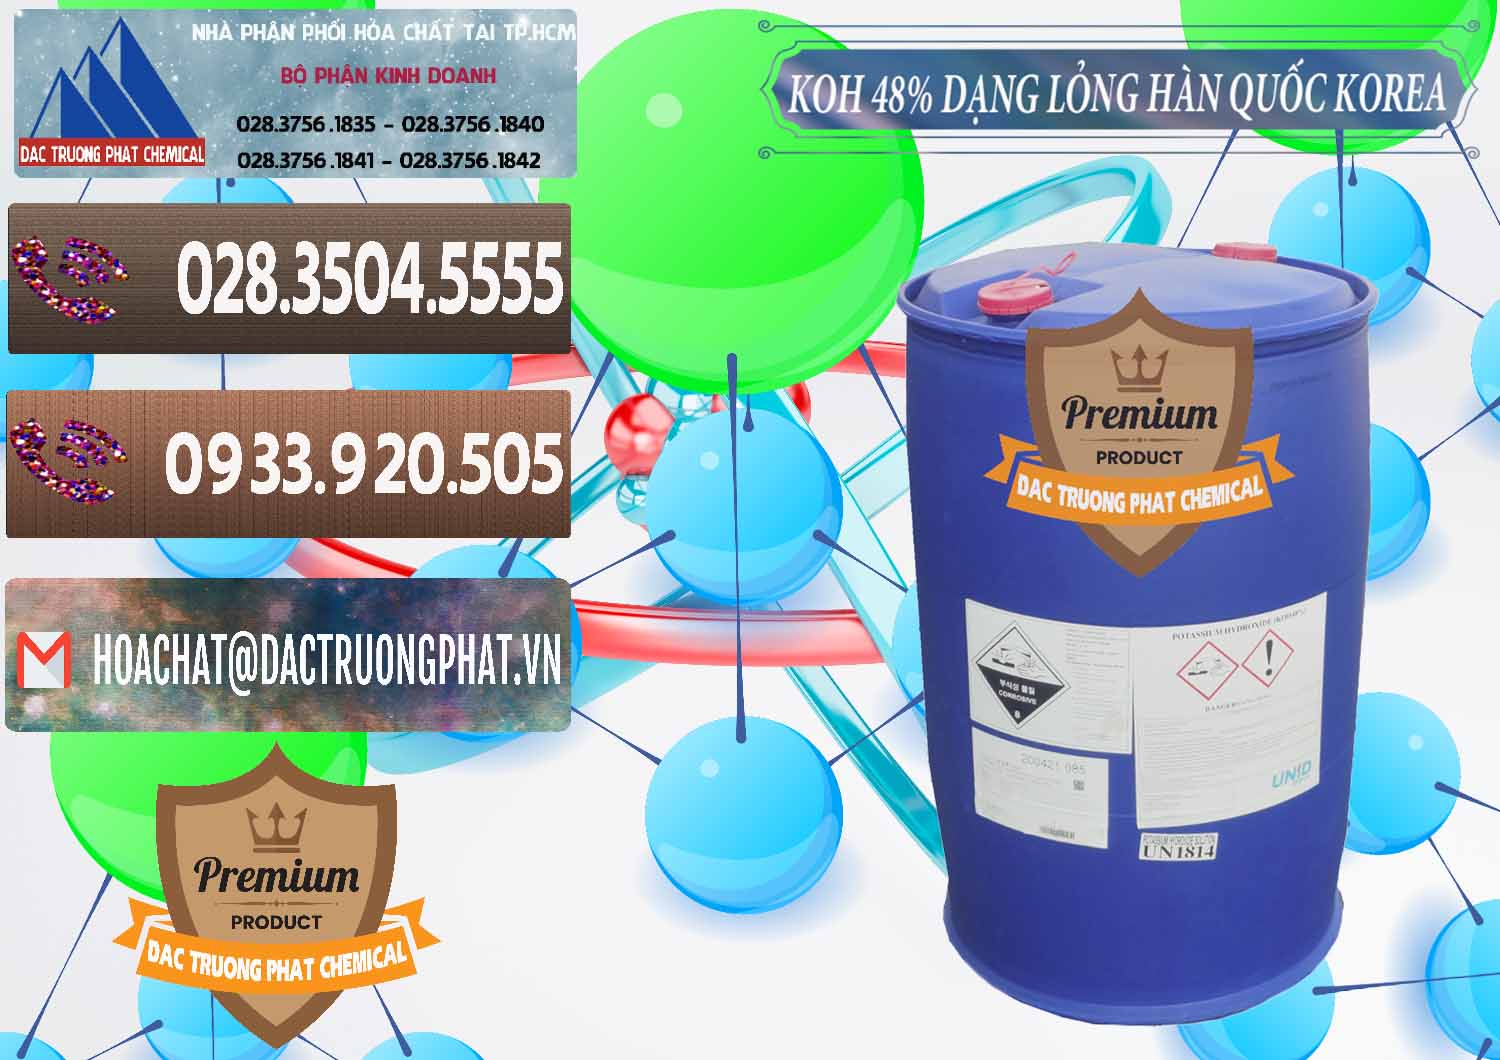 Nơi phân phối & bán KOH Dạng Nước – Potassium Hydroxide Lỏng 48% Hàn Quốc Korea - 0293 - Nơi nhập khẩu & phân phối hóa chất tại TP.HCM - hoachatviet.net